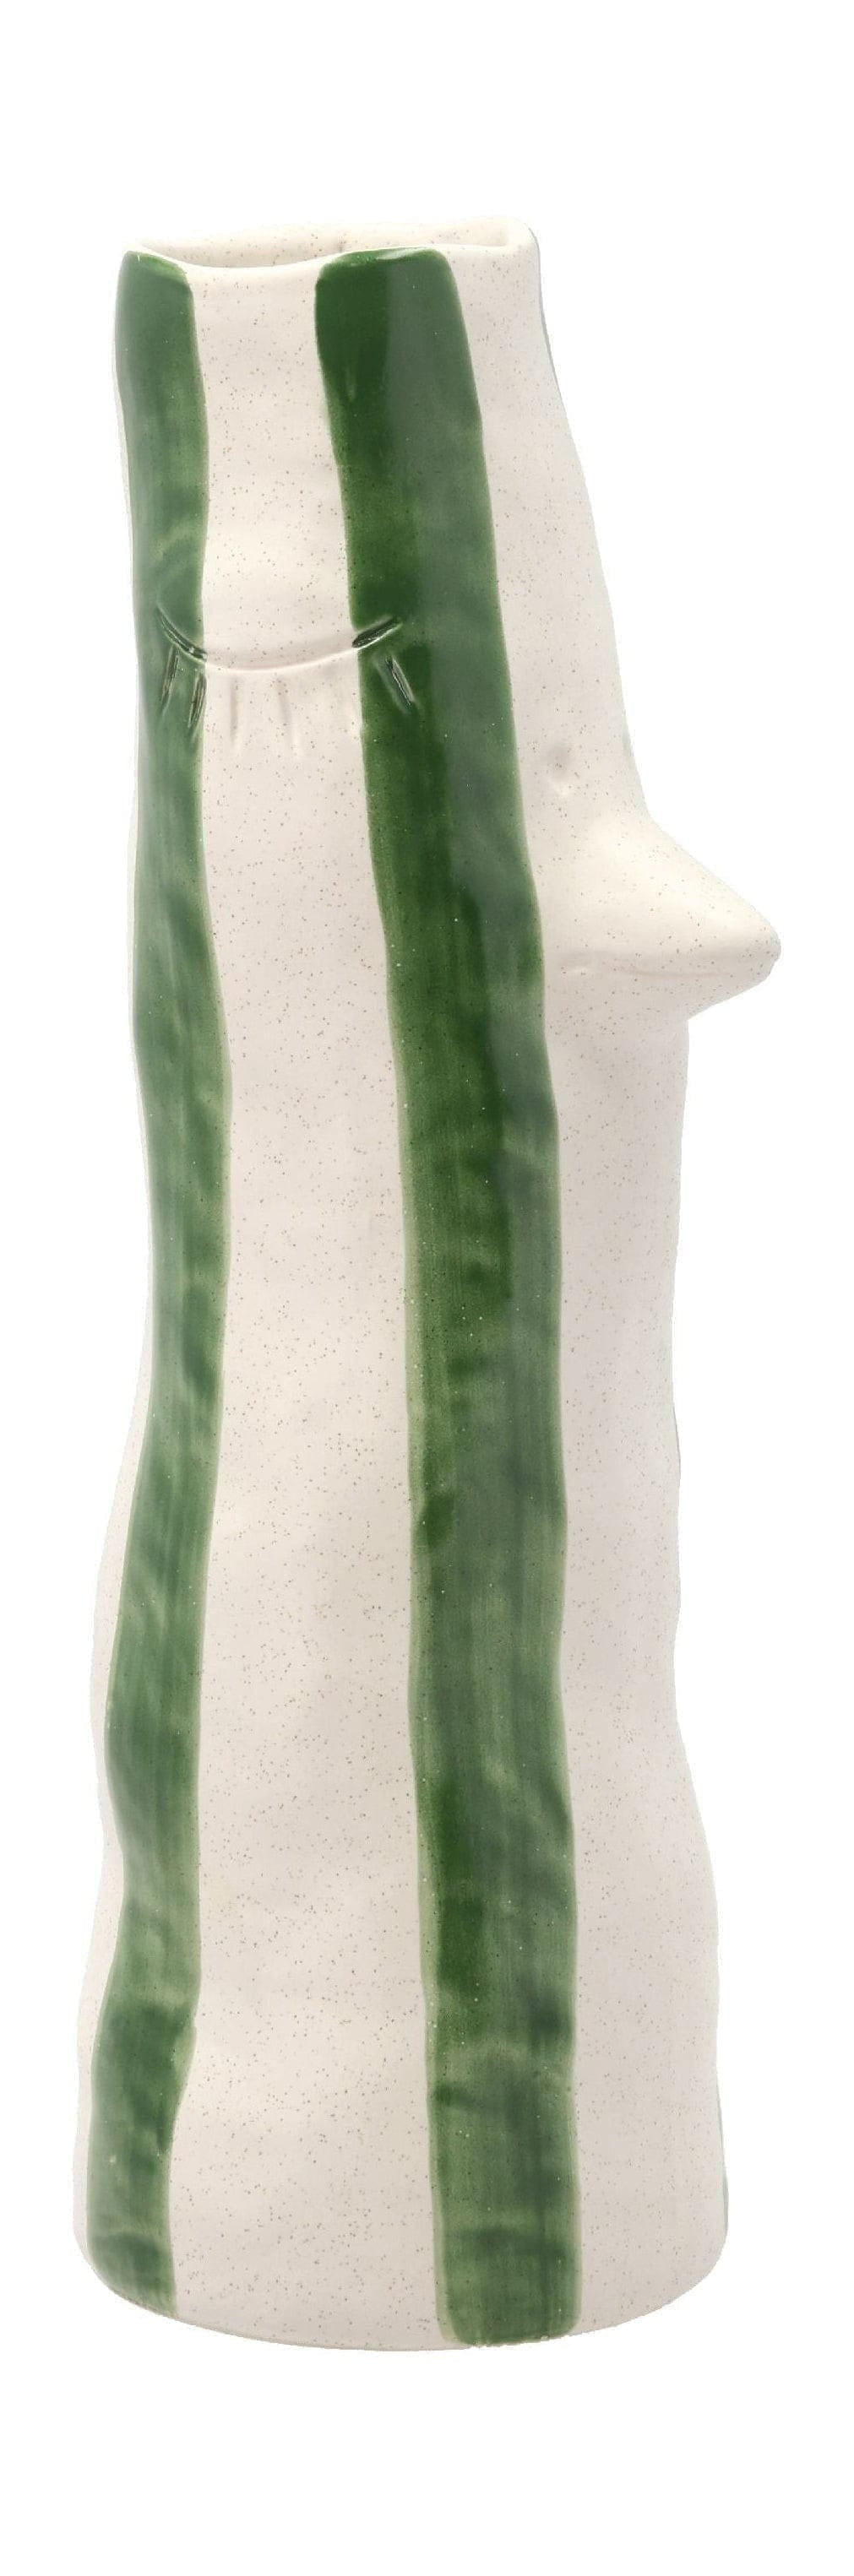 Villa -Kollektionsstil Vase mit Schnabel und Wimpern groß, grün